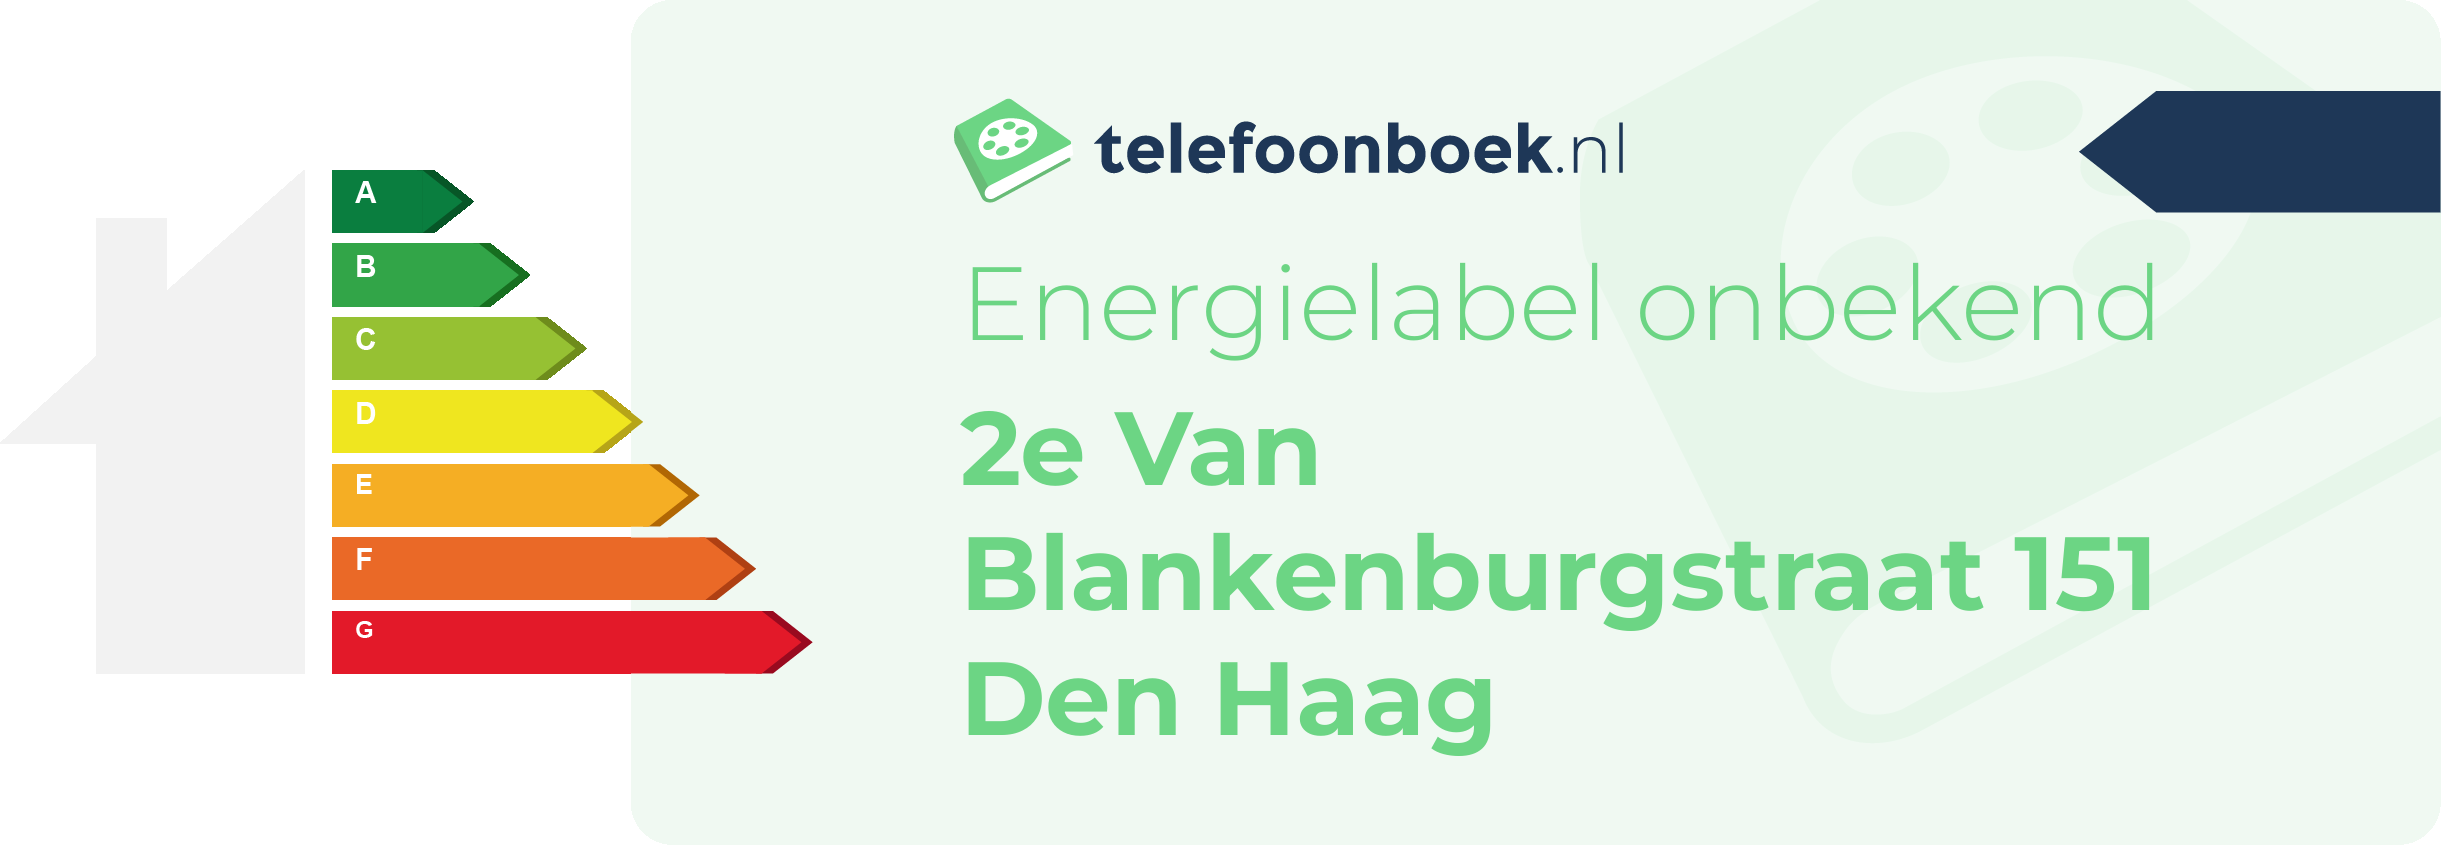 Energielabel 2e Van Blankenburgstraat 151 Den Haag